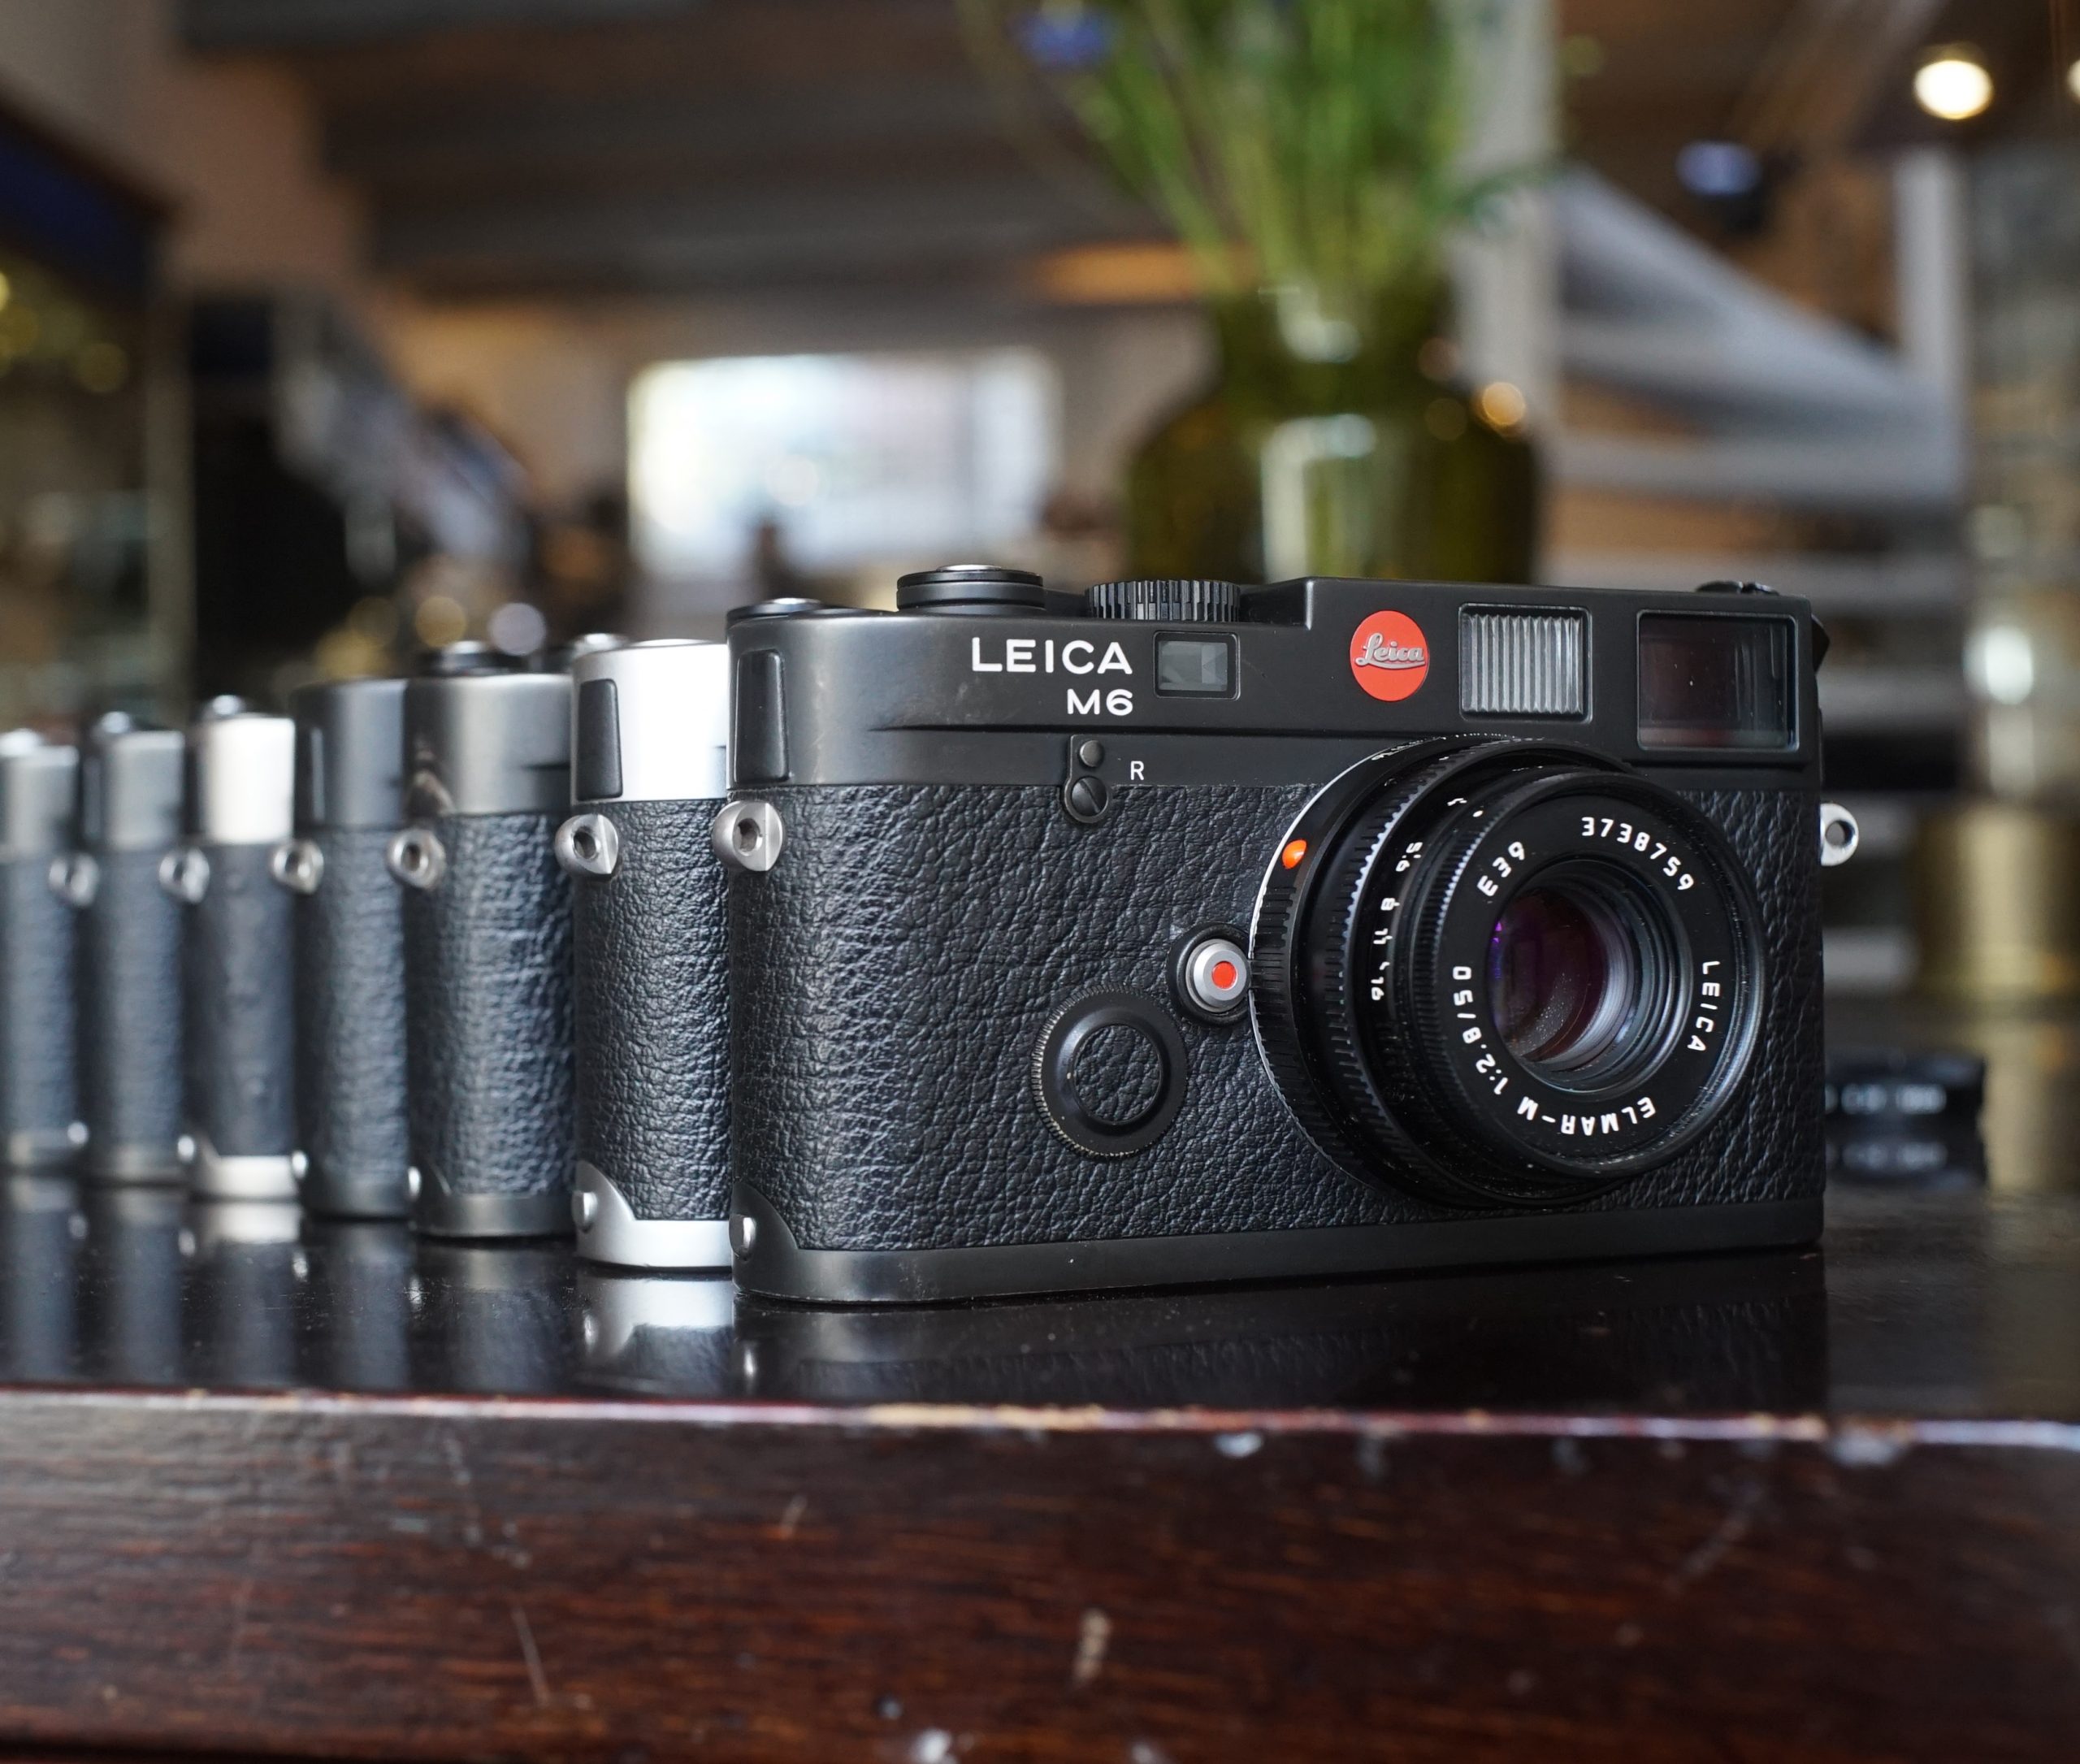 Leica M6 cameras